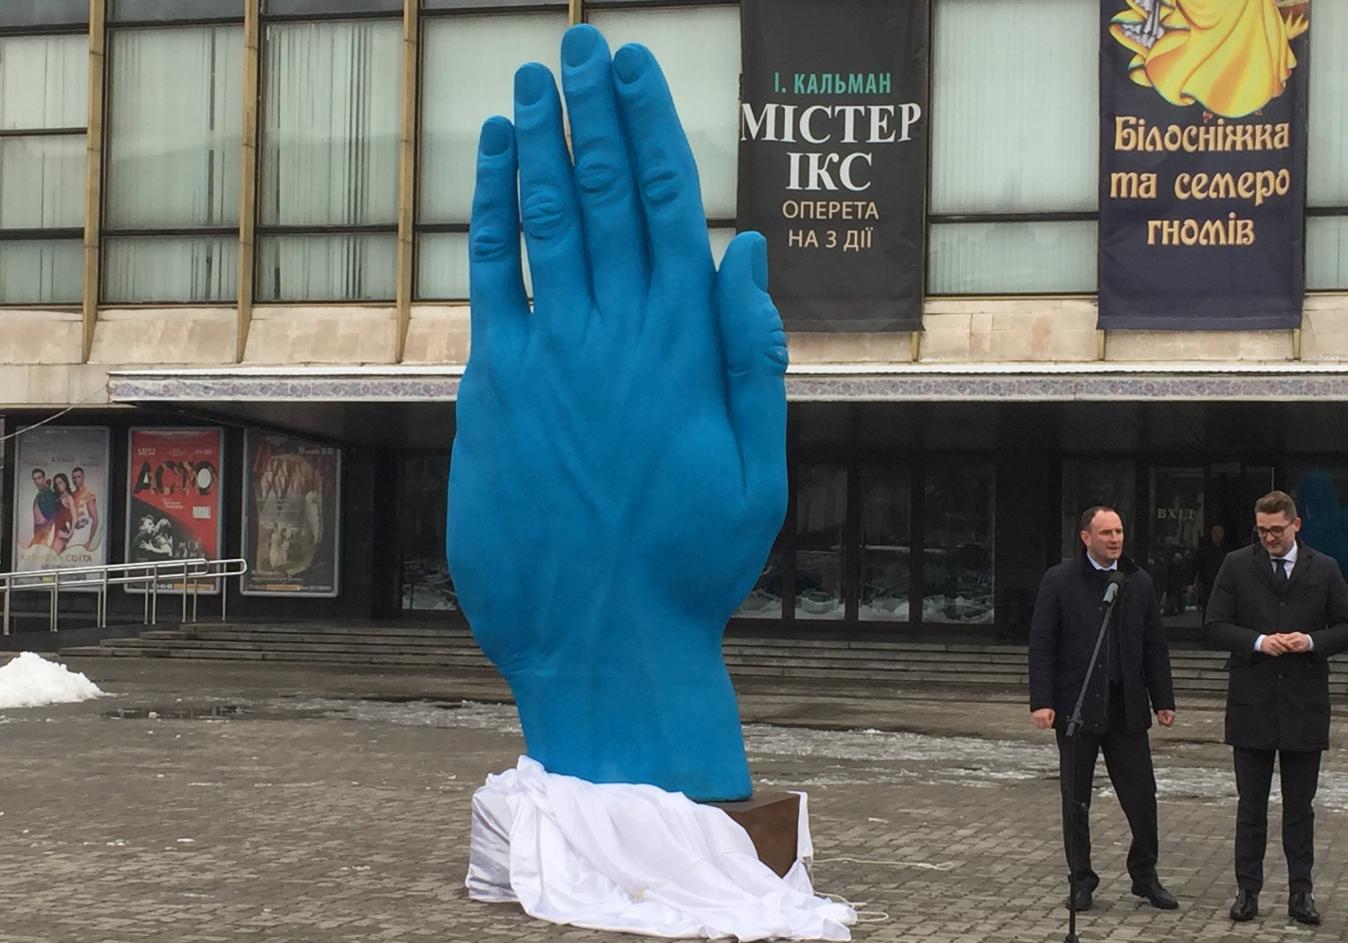 В центре Днепре установили большую синюю руку / фото: 056.ua